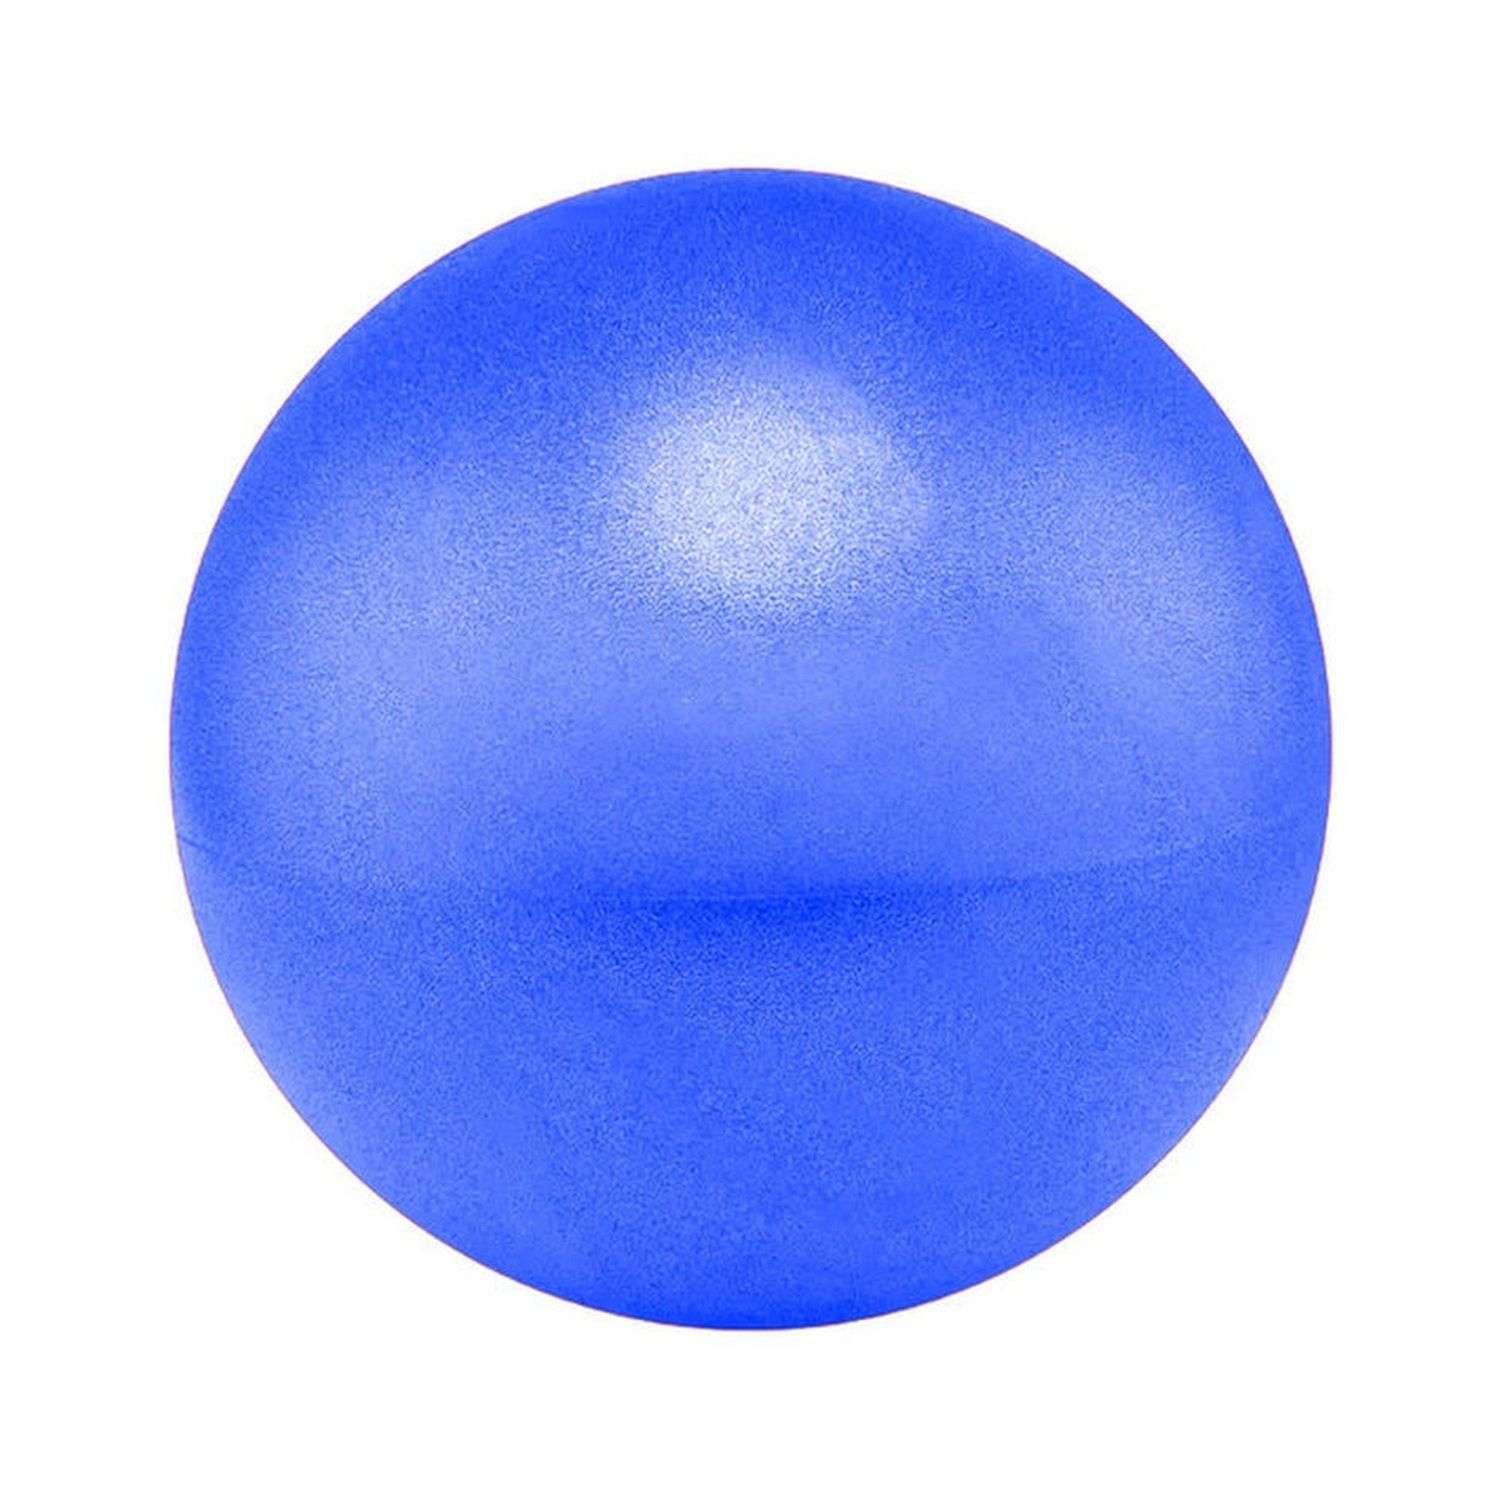 Мяч для йоги и пилатеса Beroma с антивзрывным эффектом 20 см синий - фото 1